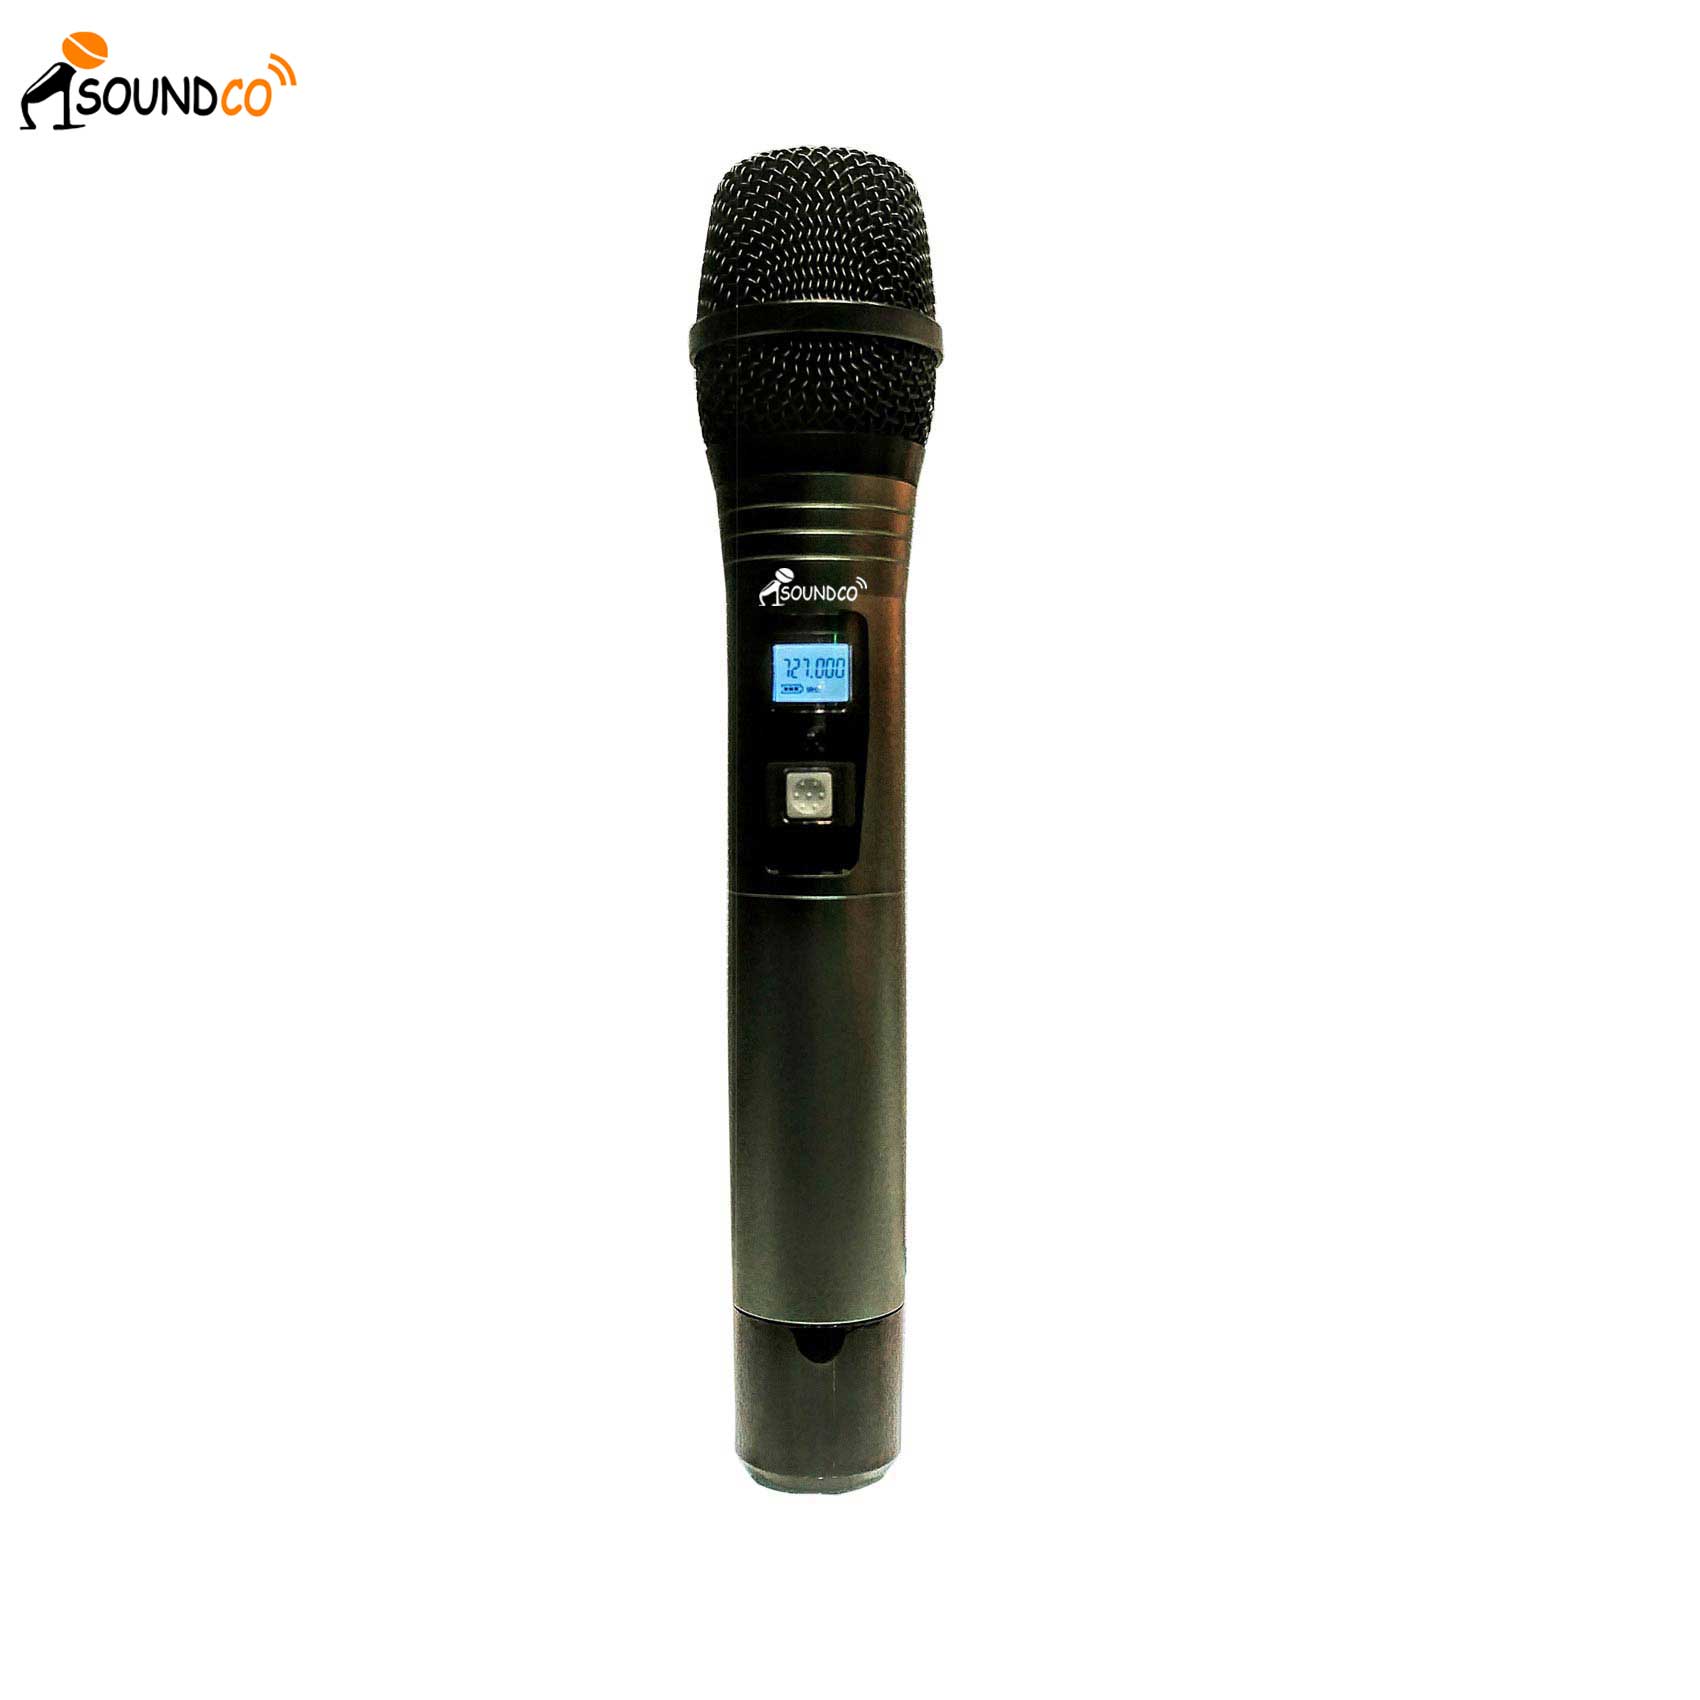 EU-4400 H Wireless Microphone